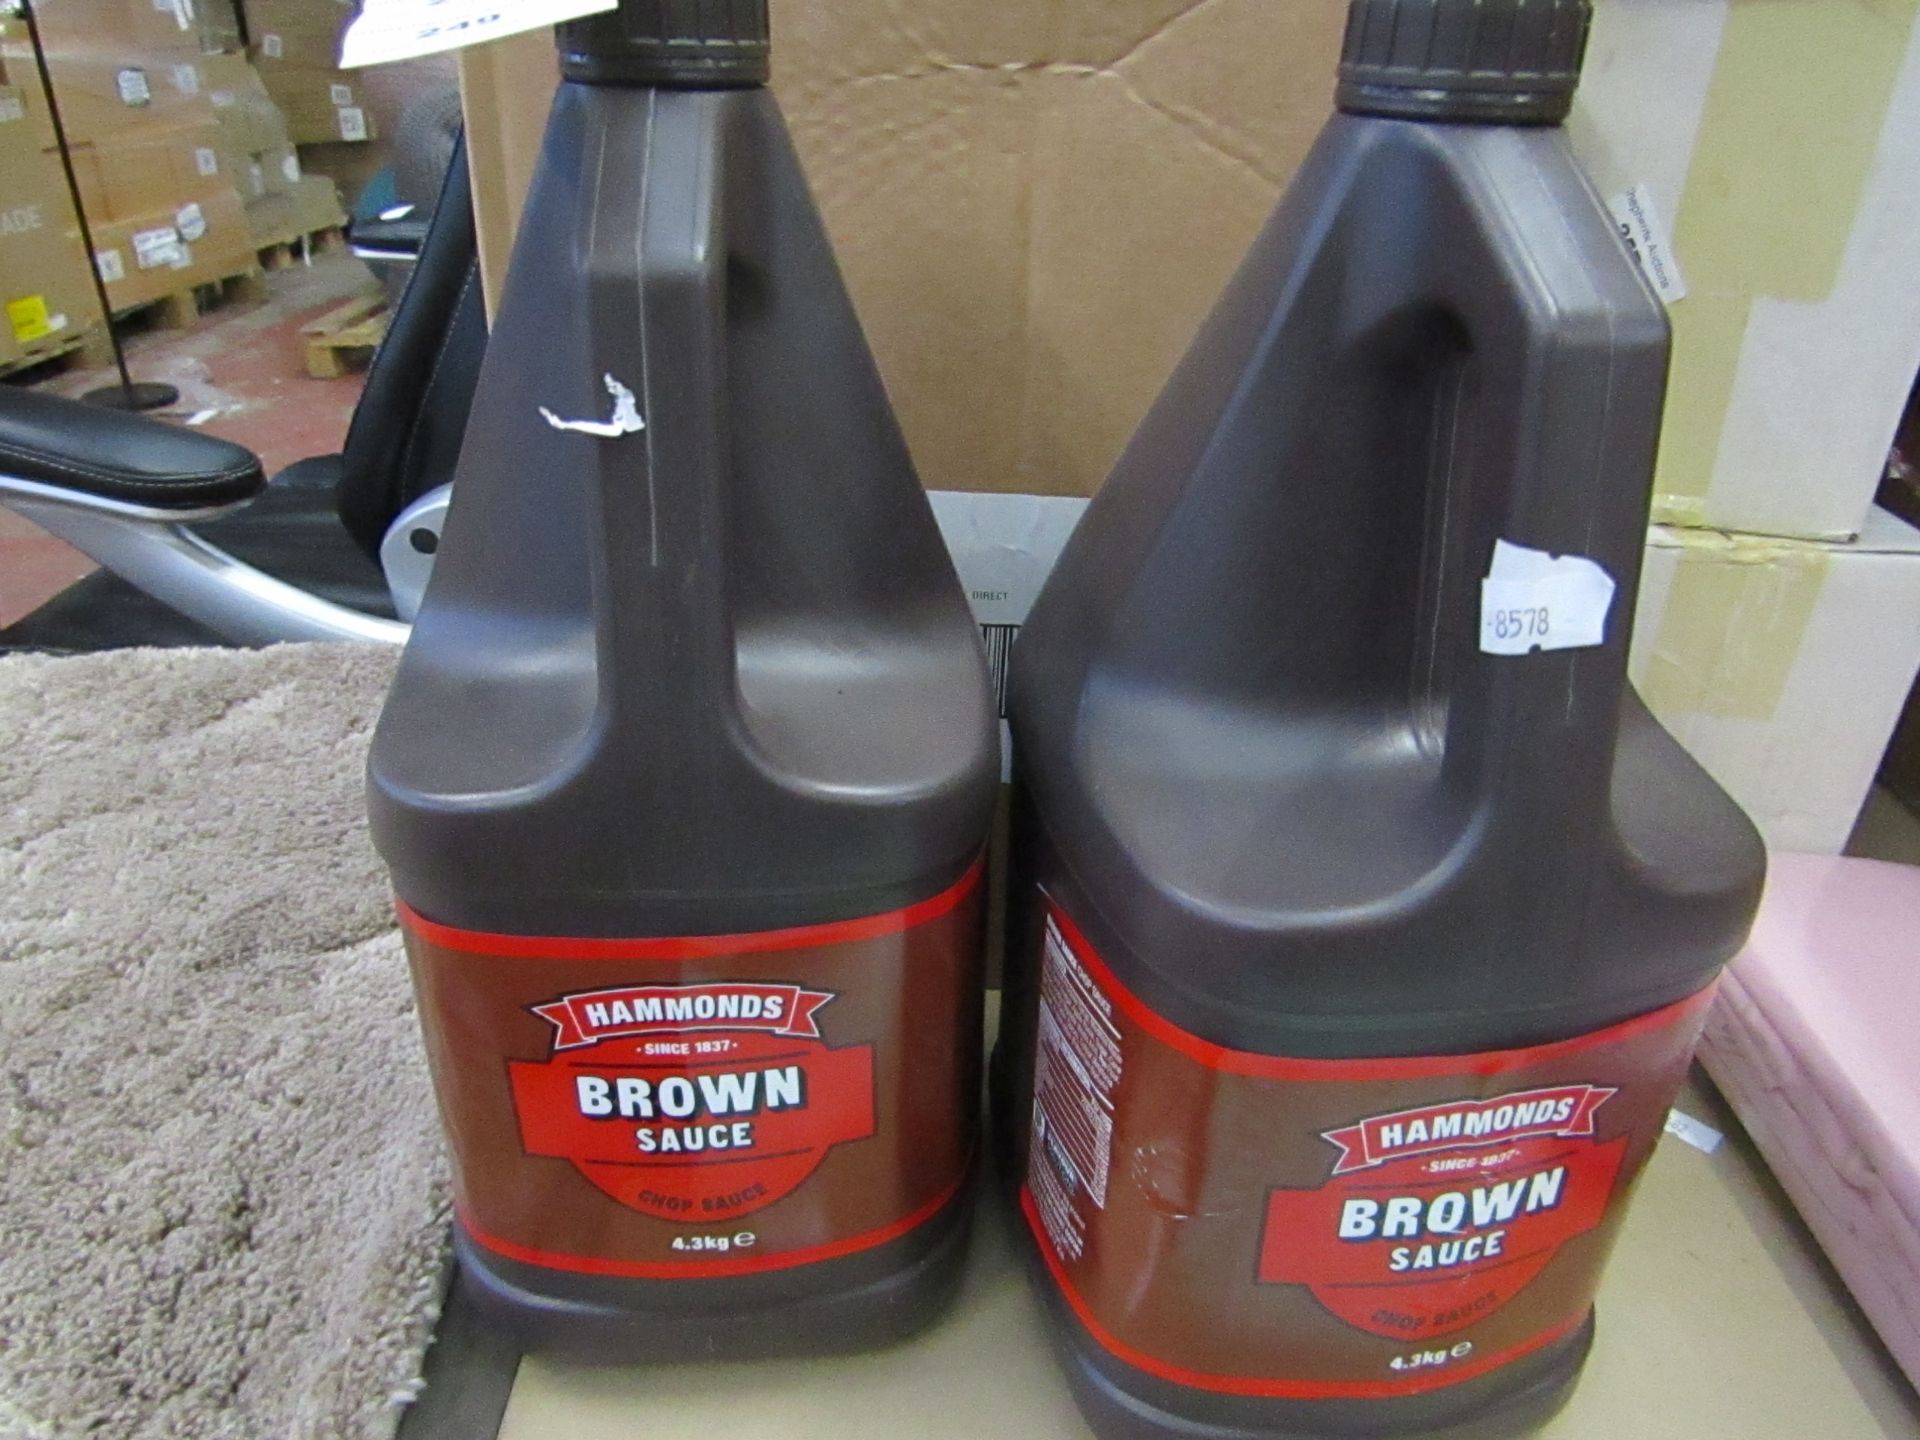 2x Hammonds - Brown Sauce 4.3 KG - BB 22/10/20.